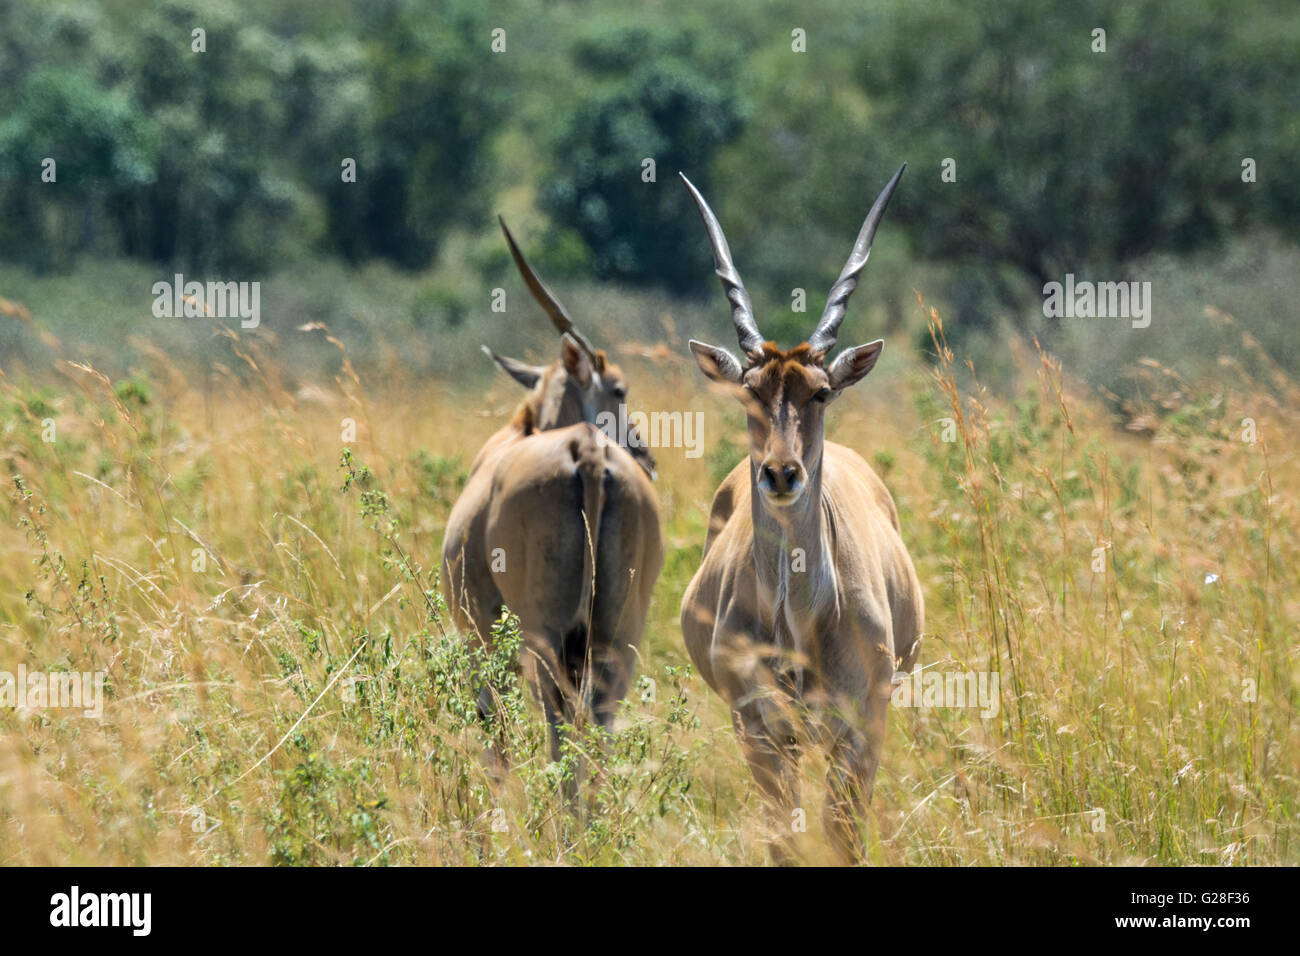 Deux adultes sauvages, Élands, Tragelaphus gryx, Masai Mara National Reserve, Kenya, Afrique de l'Est Banque D'Images